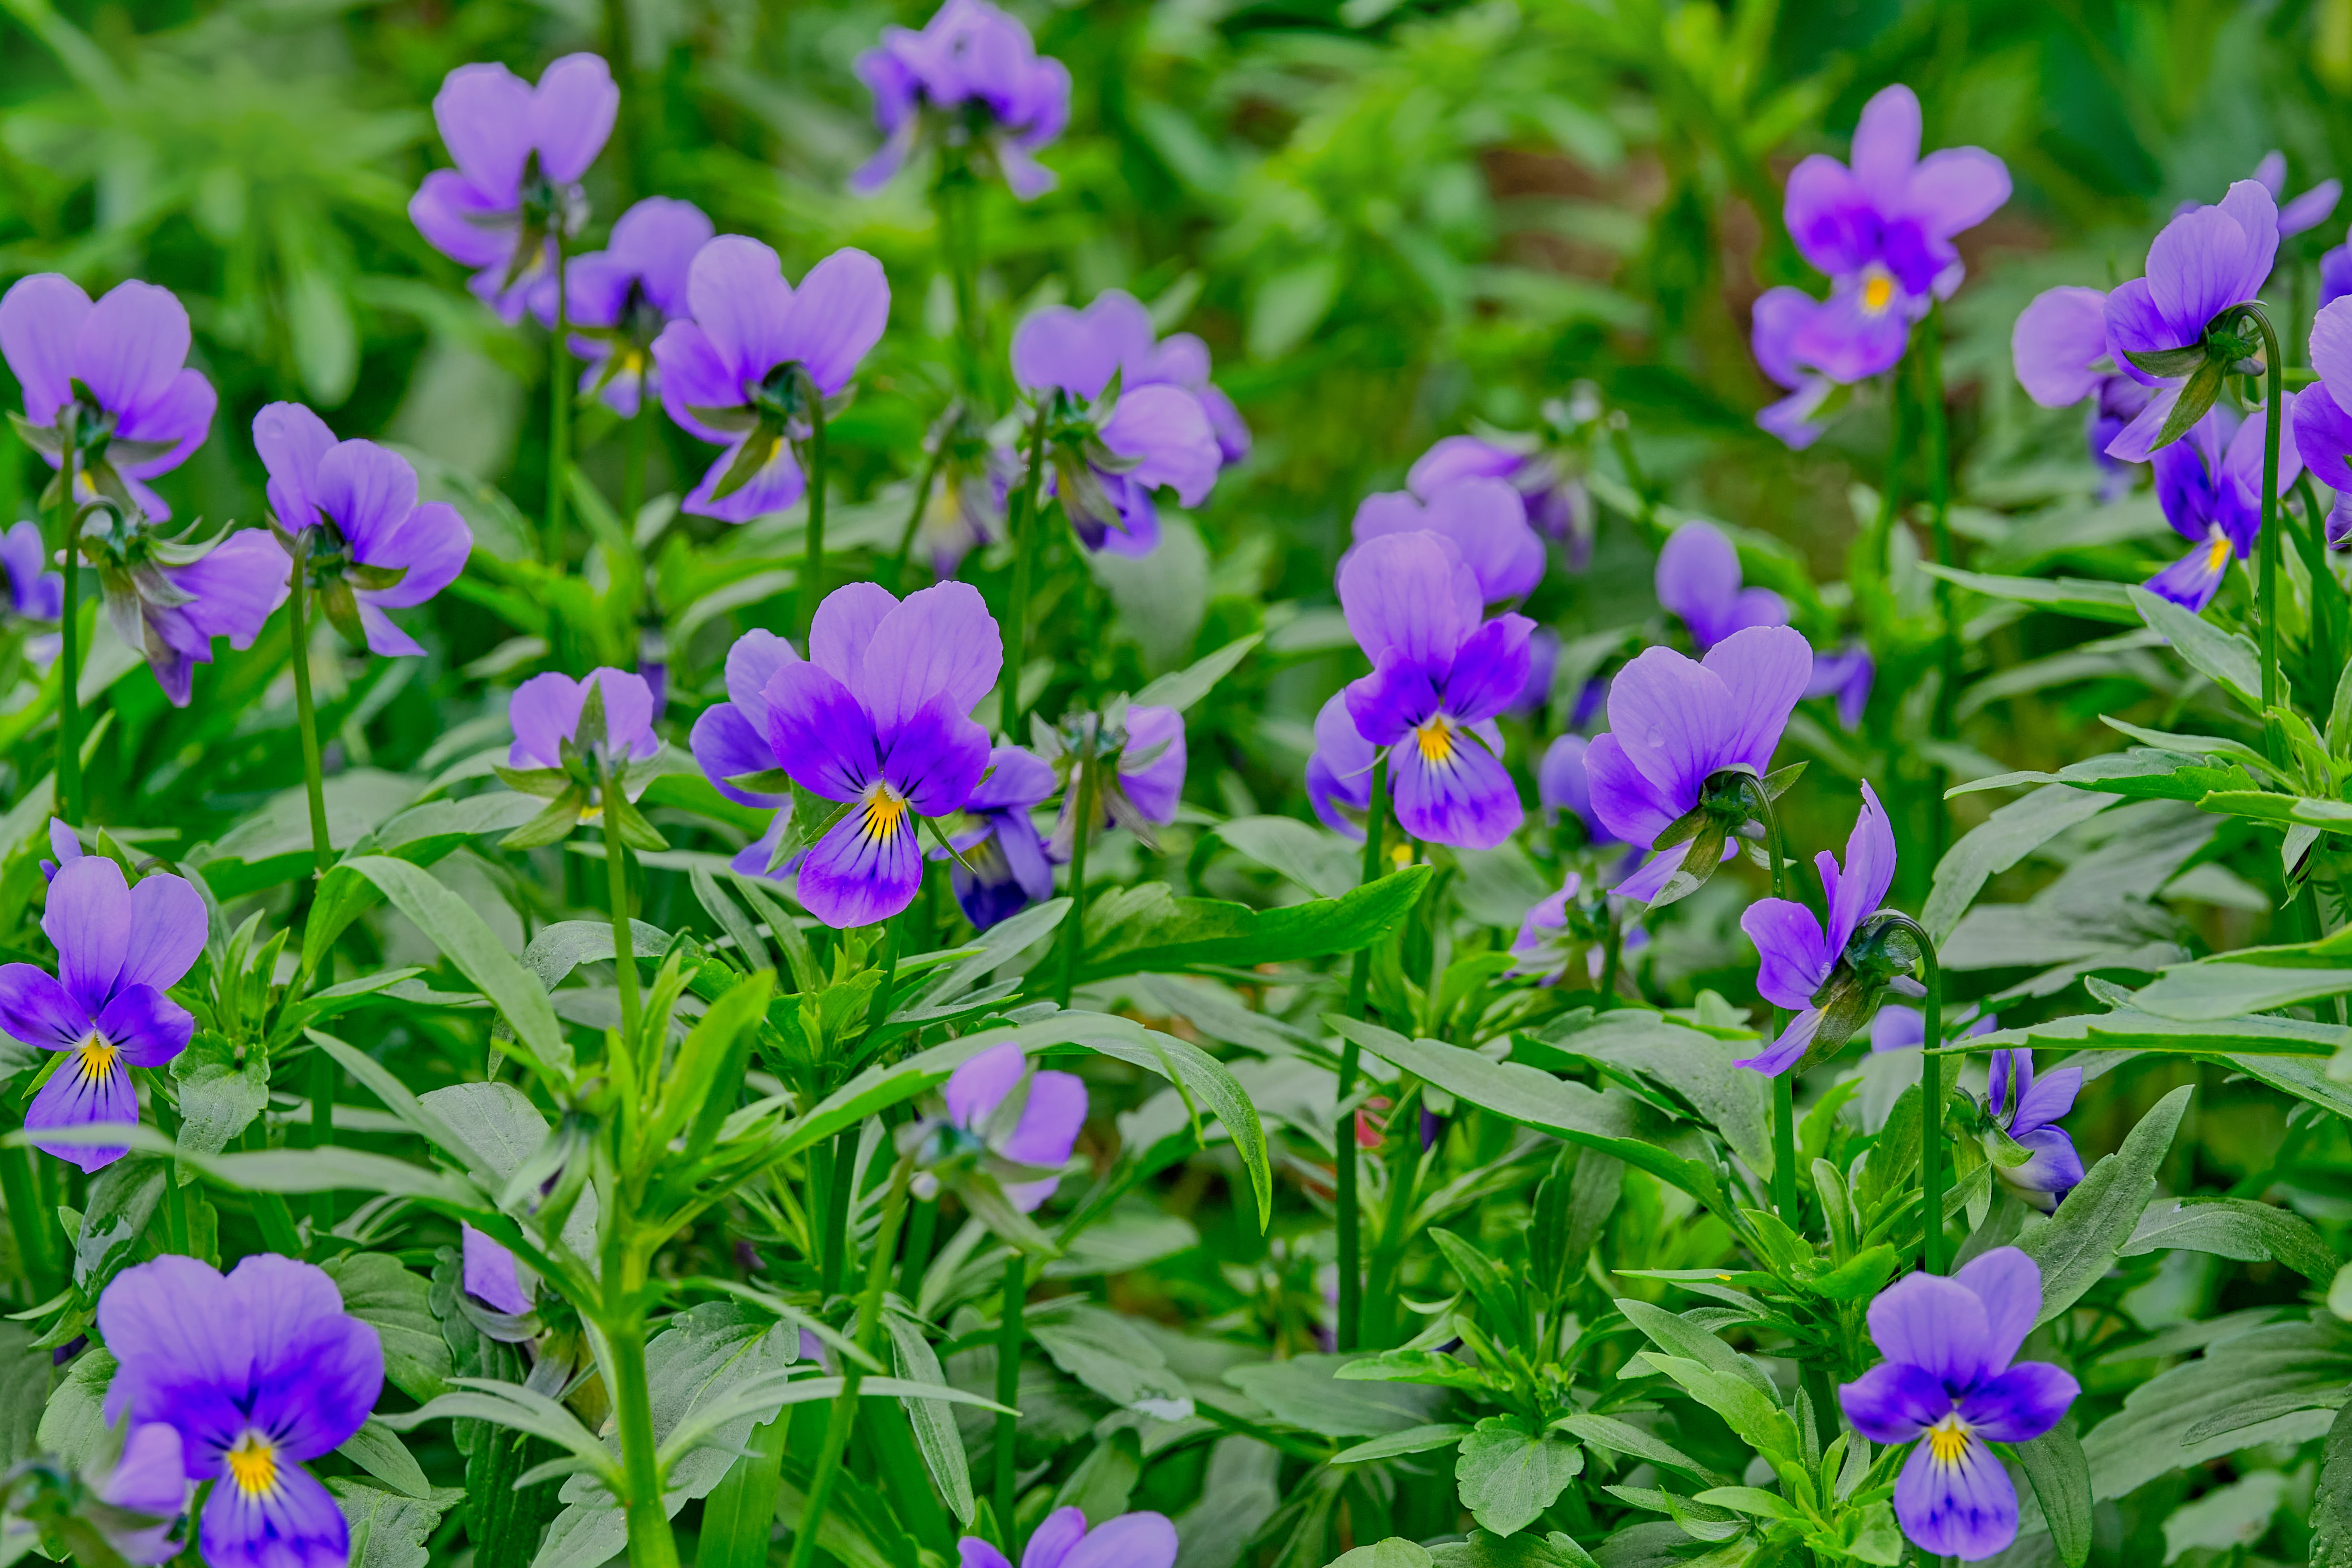 blooming-in-the-garden-violets-pansies-2022-02-22-06-39-36-utc